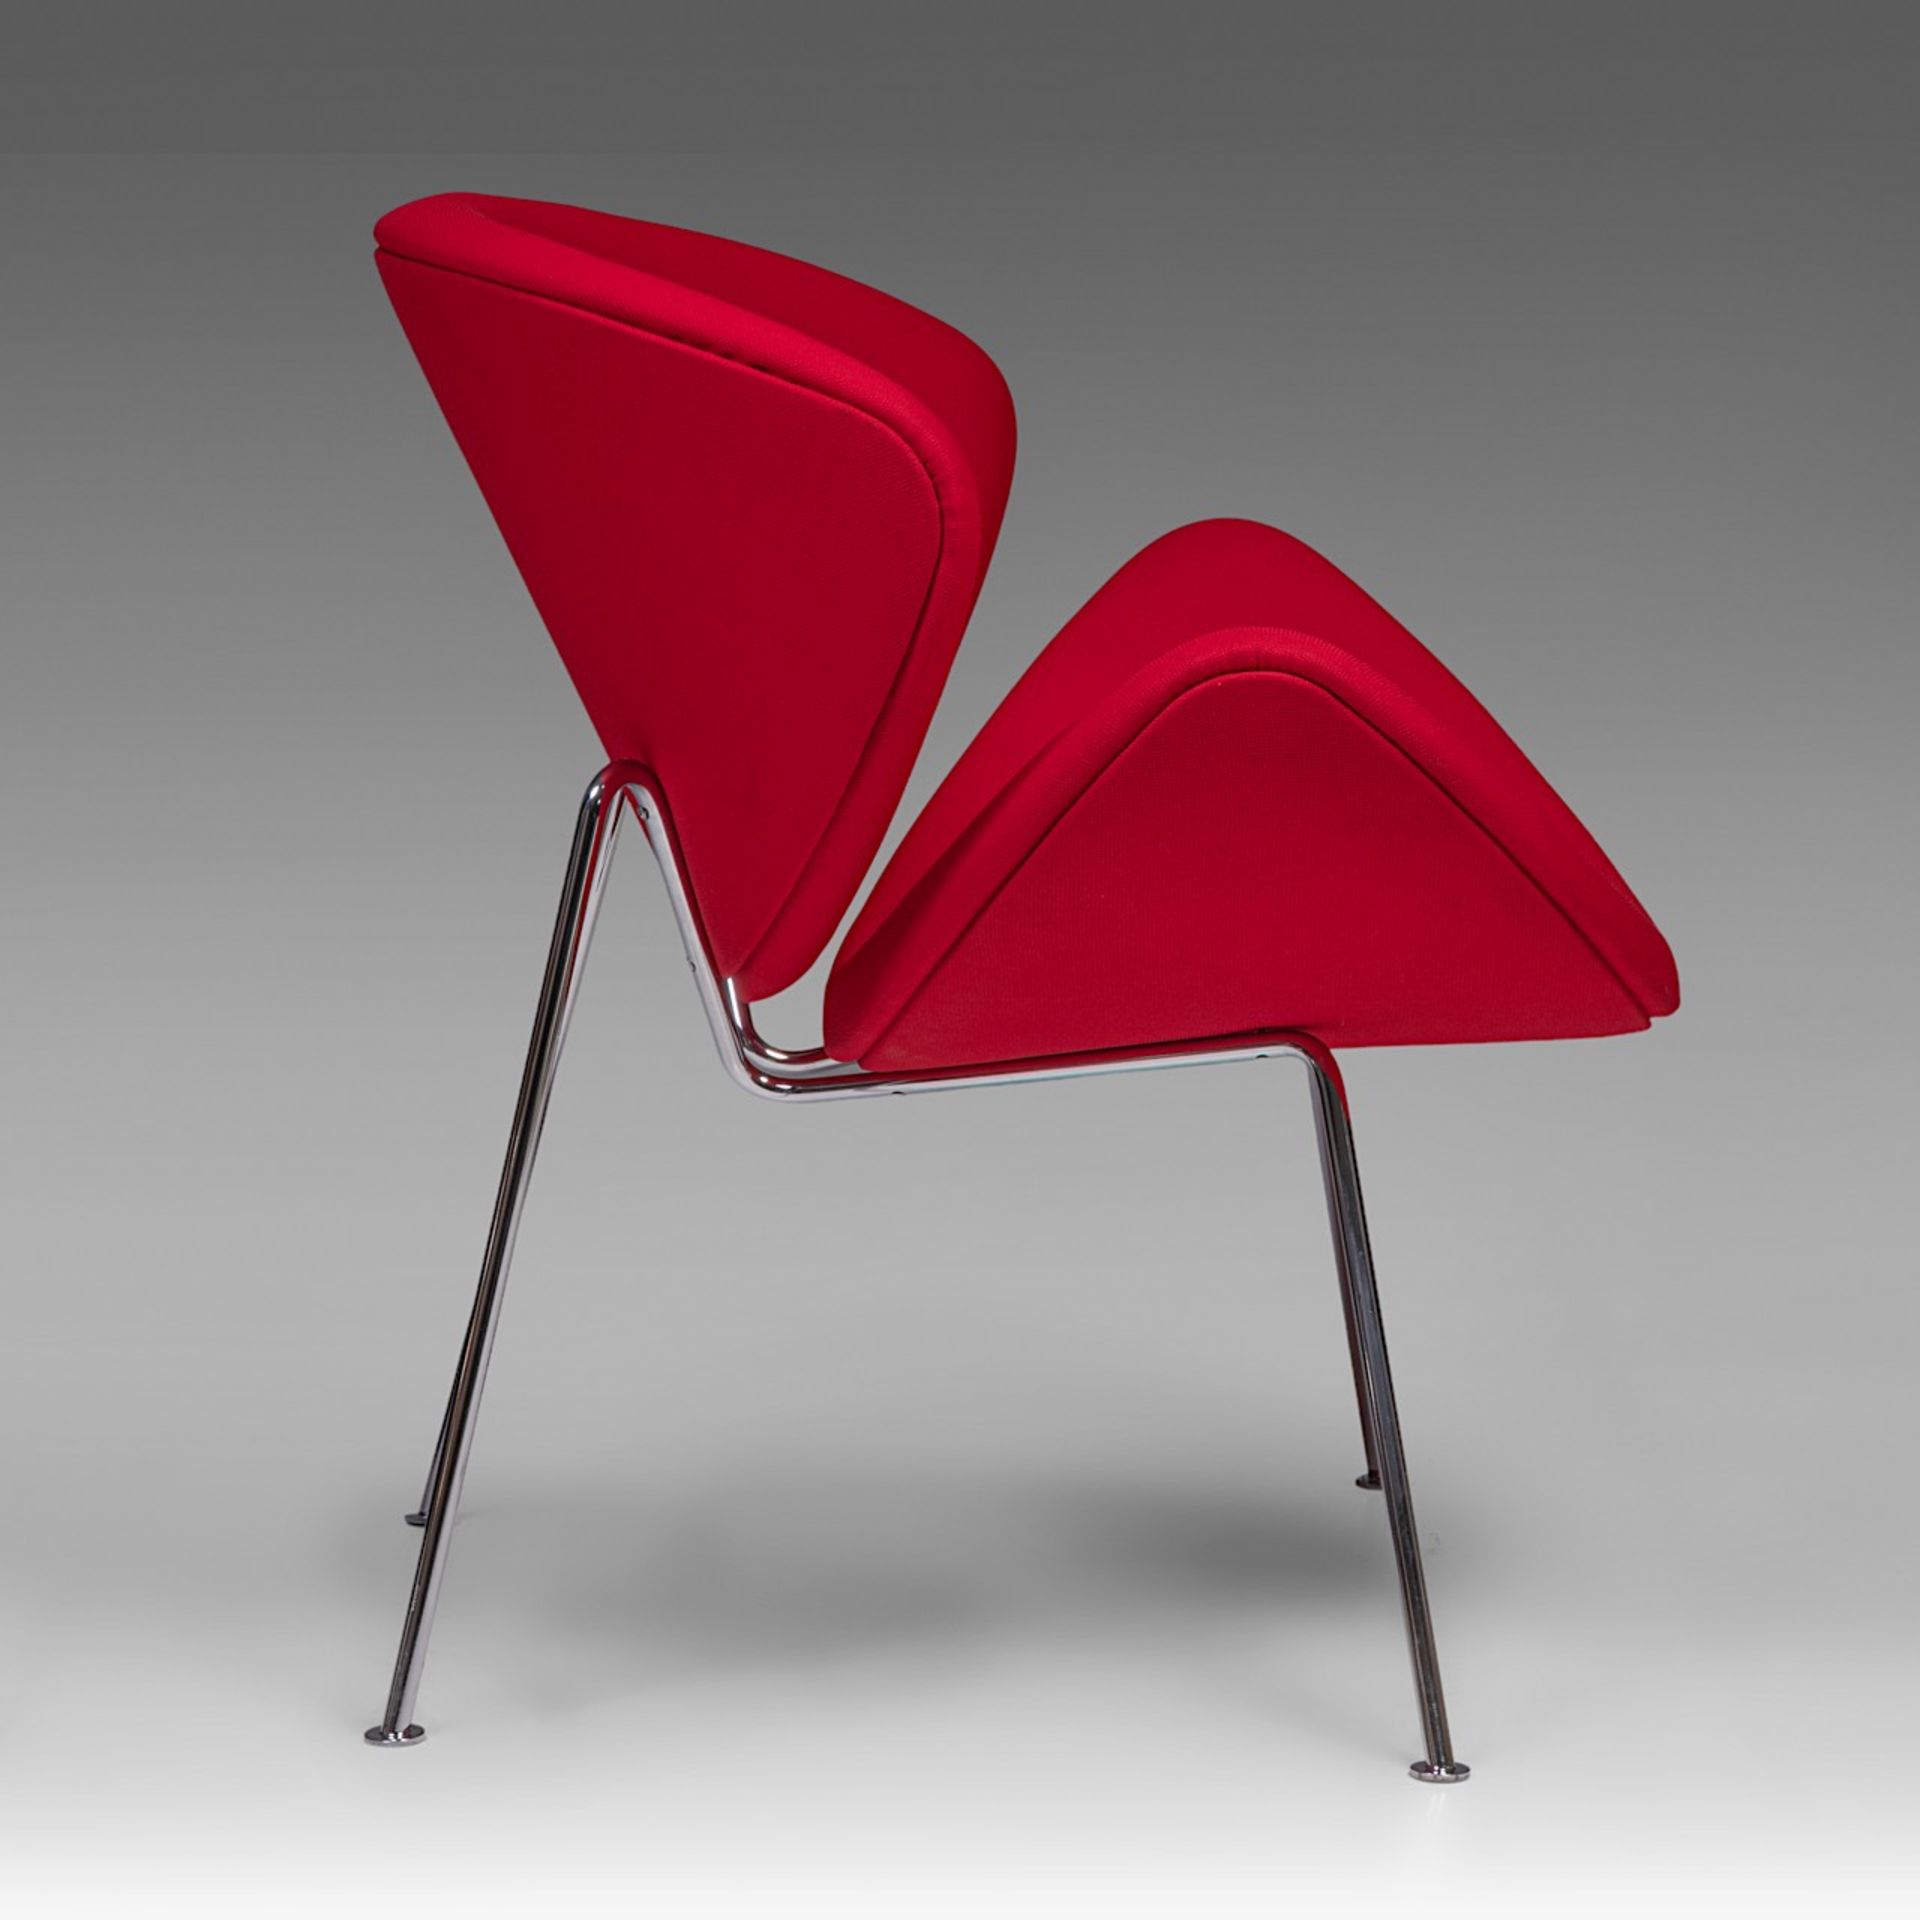 An Orange Slice chair by Pierre Pauline for Artifort, H 85 - W 82 cm - Bild 6 aus 9